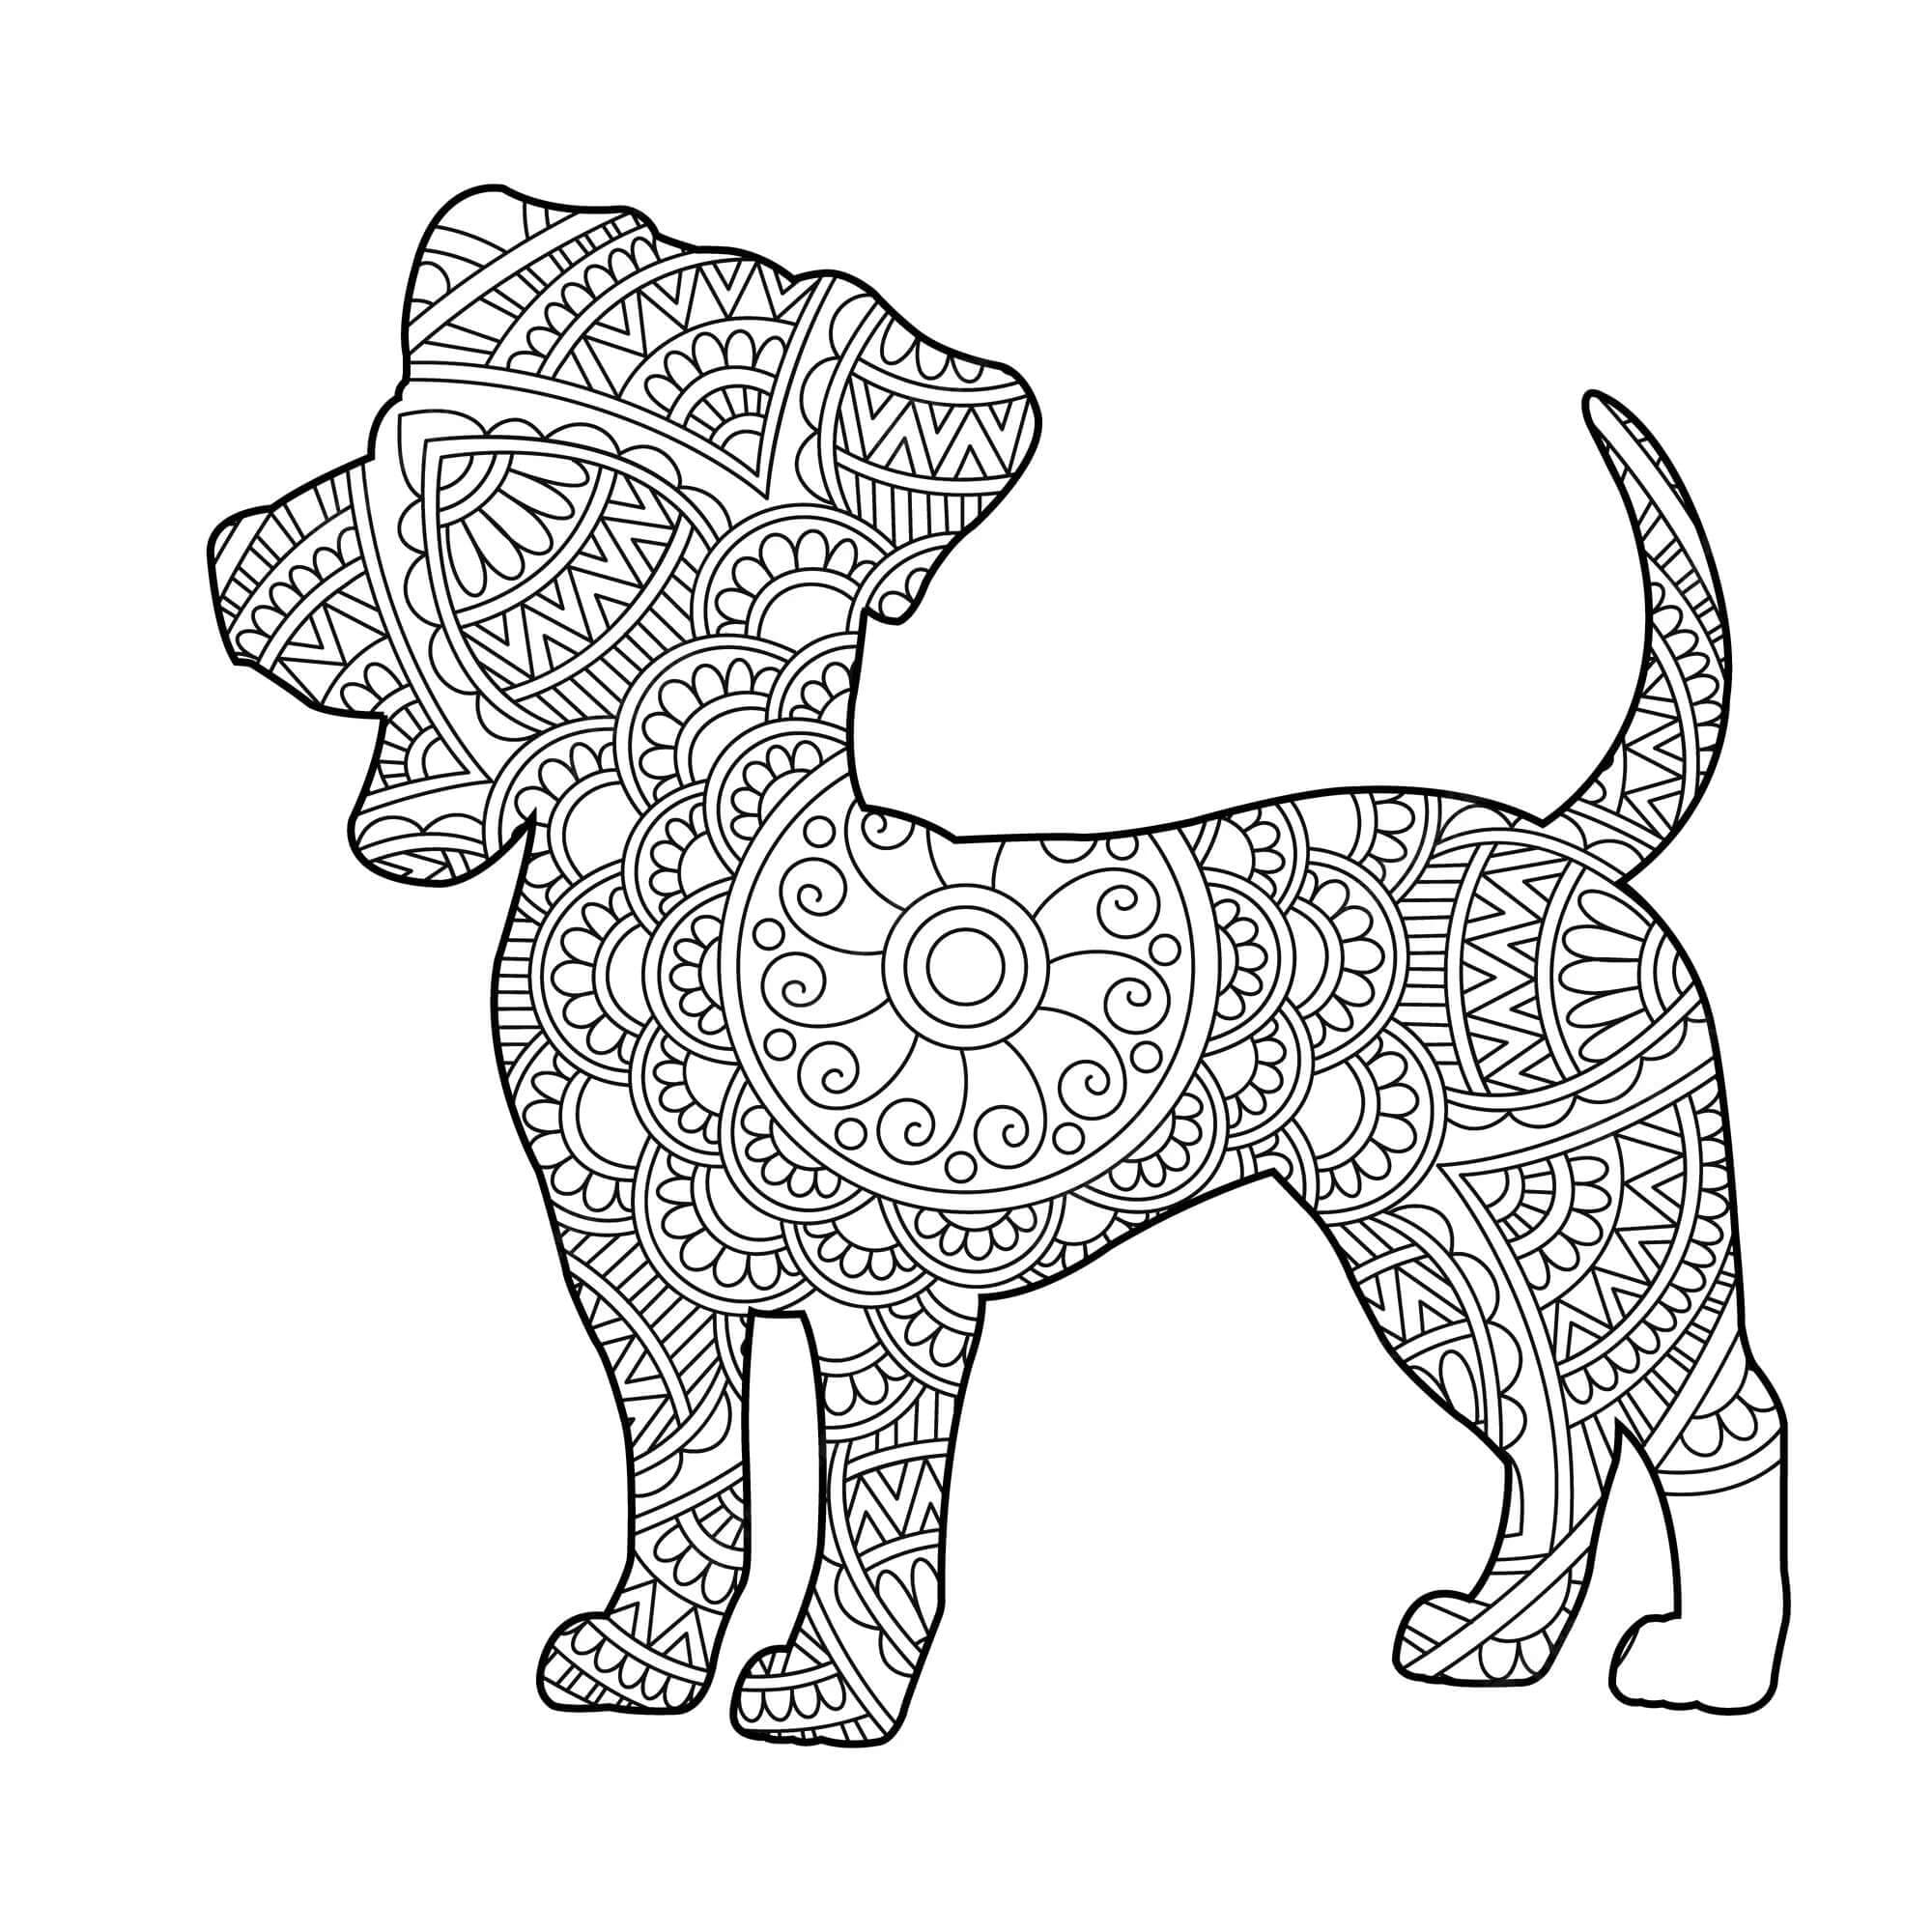 Dibujos de Imágenes gratuitas de Mandala de Perro para colorear